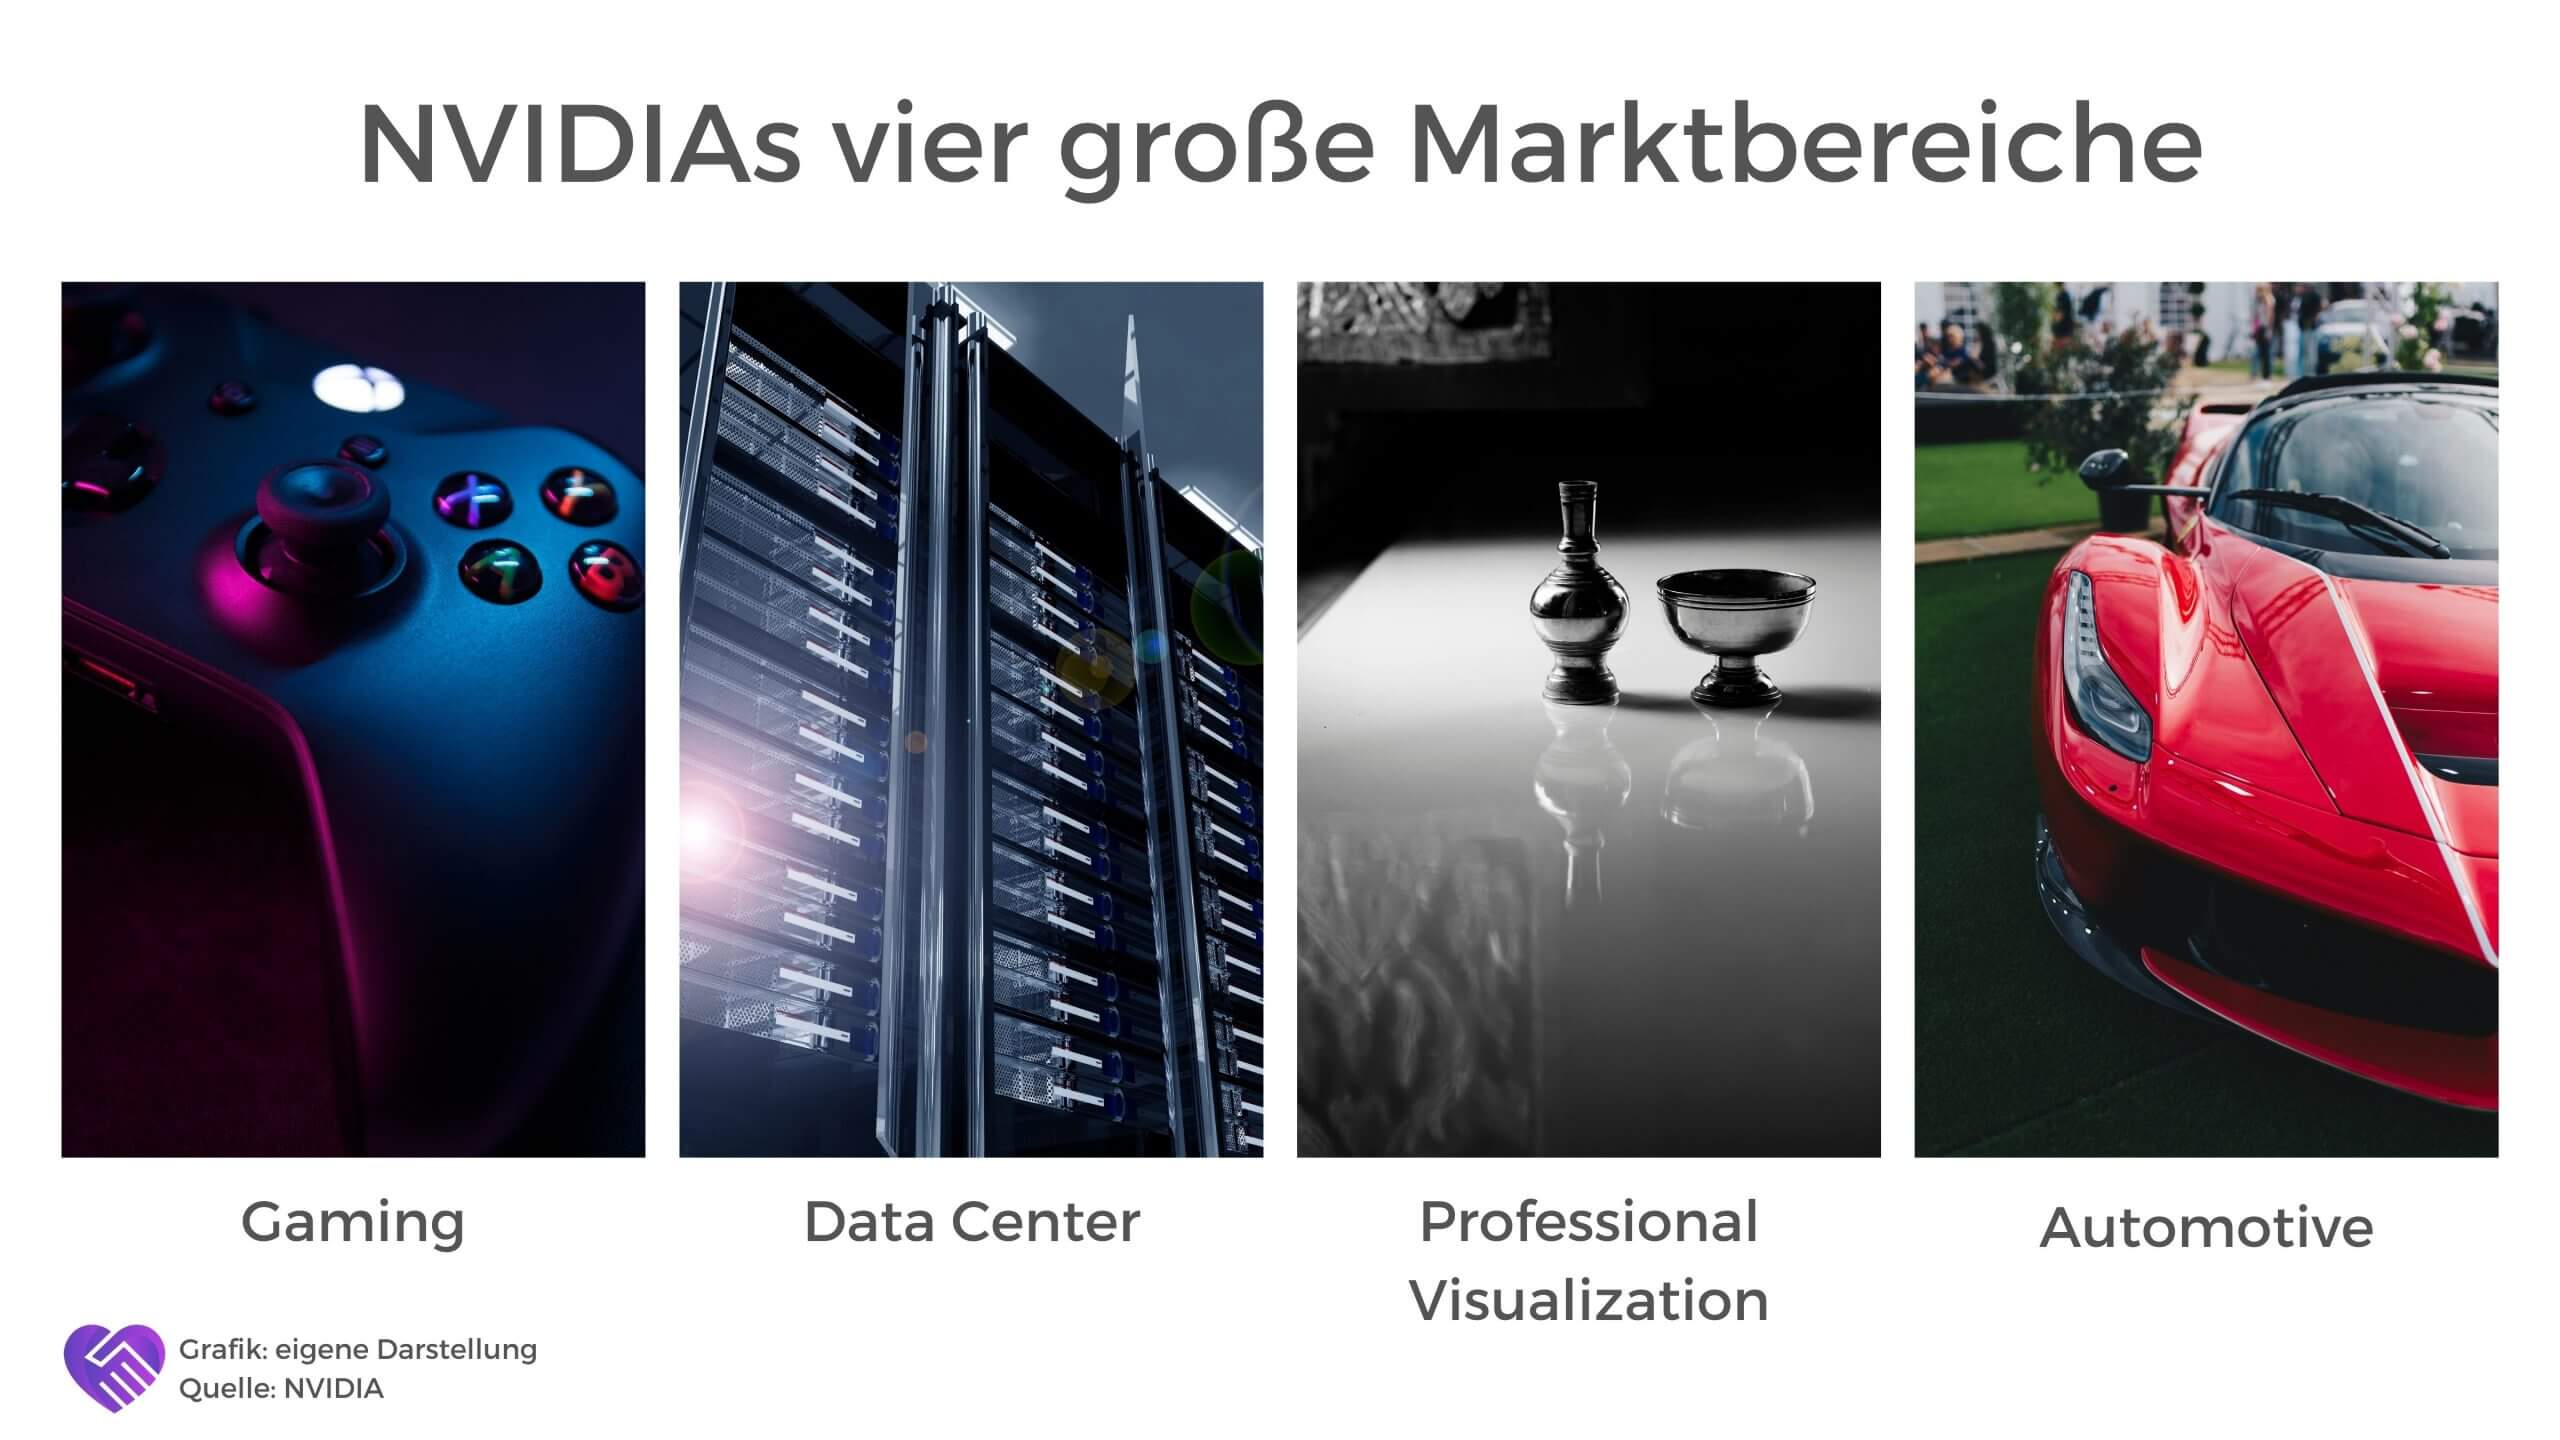 NVIDIAs vier große Marktbereiche